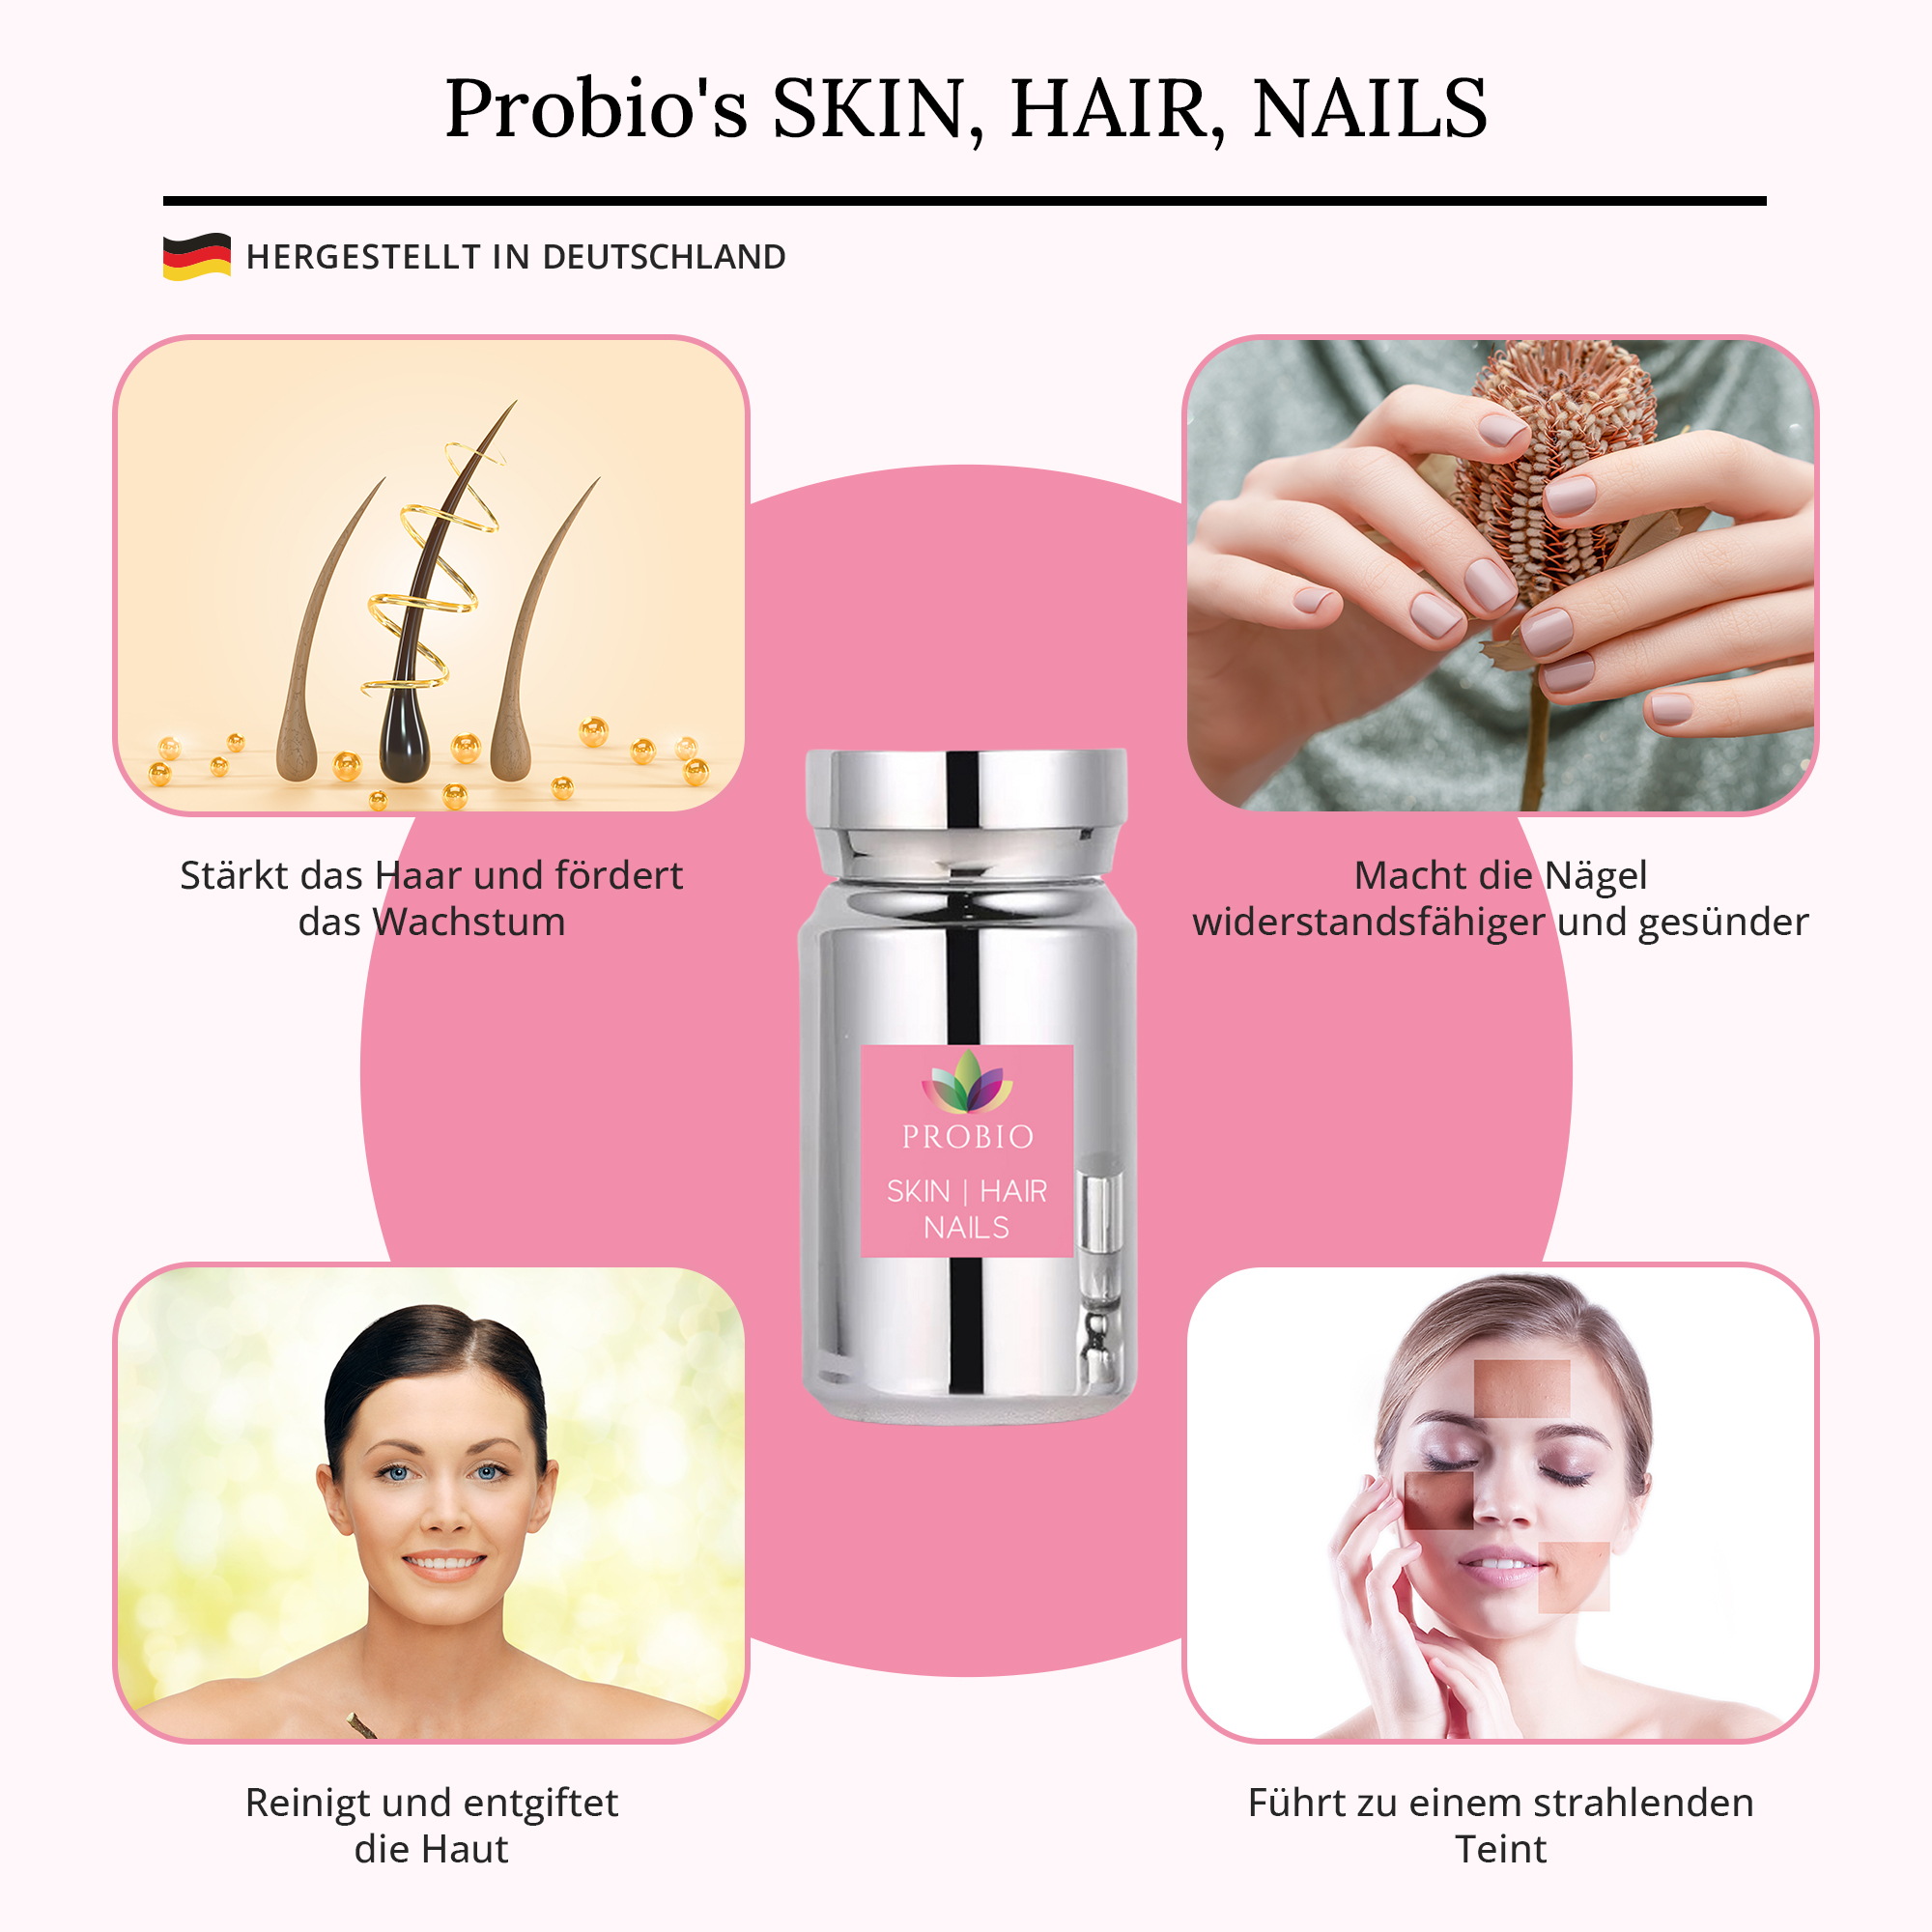 Die Wirkungsweise von Skin, Hair, Nails grafisch erklärt.